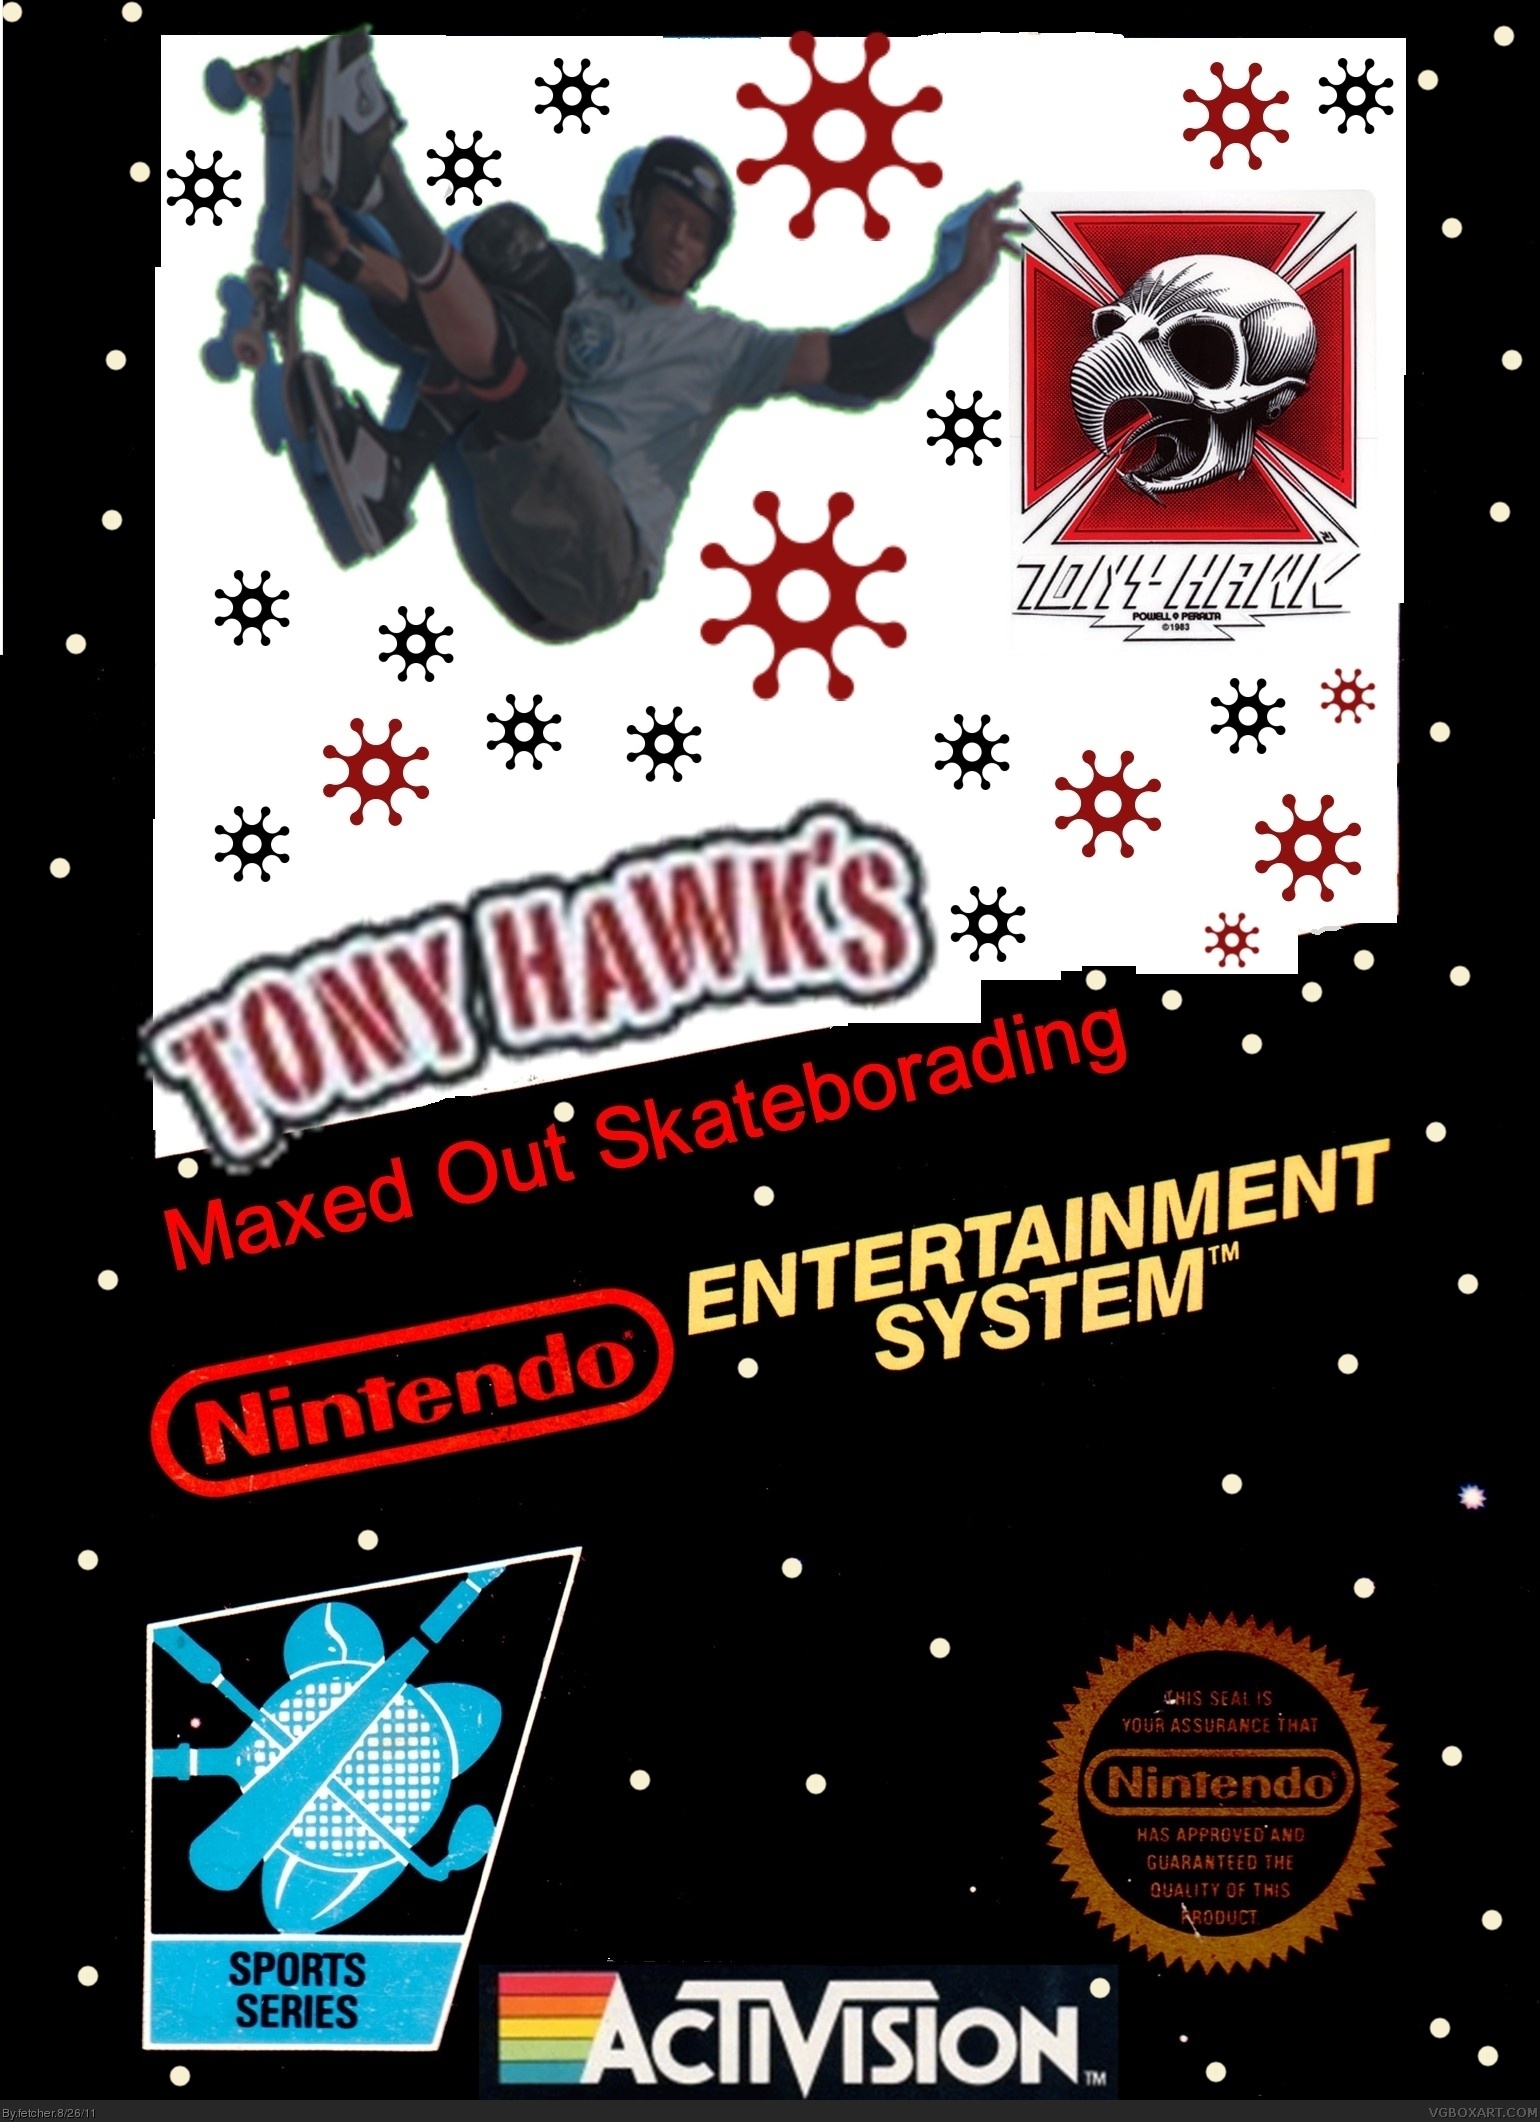 Tony Hawk's Maxed Out Skateborading box cover